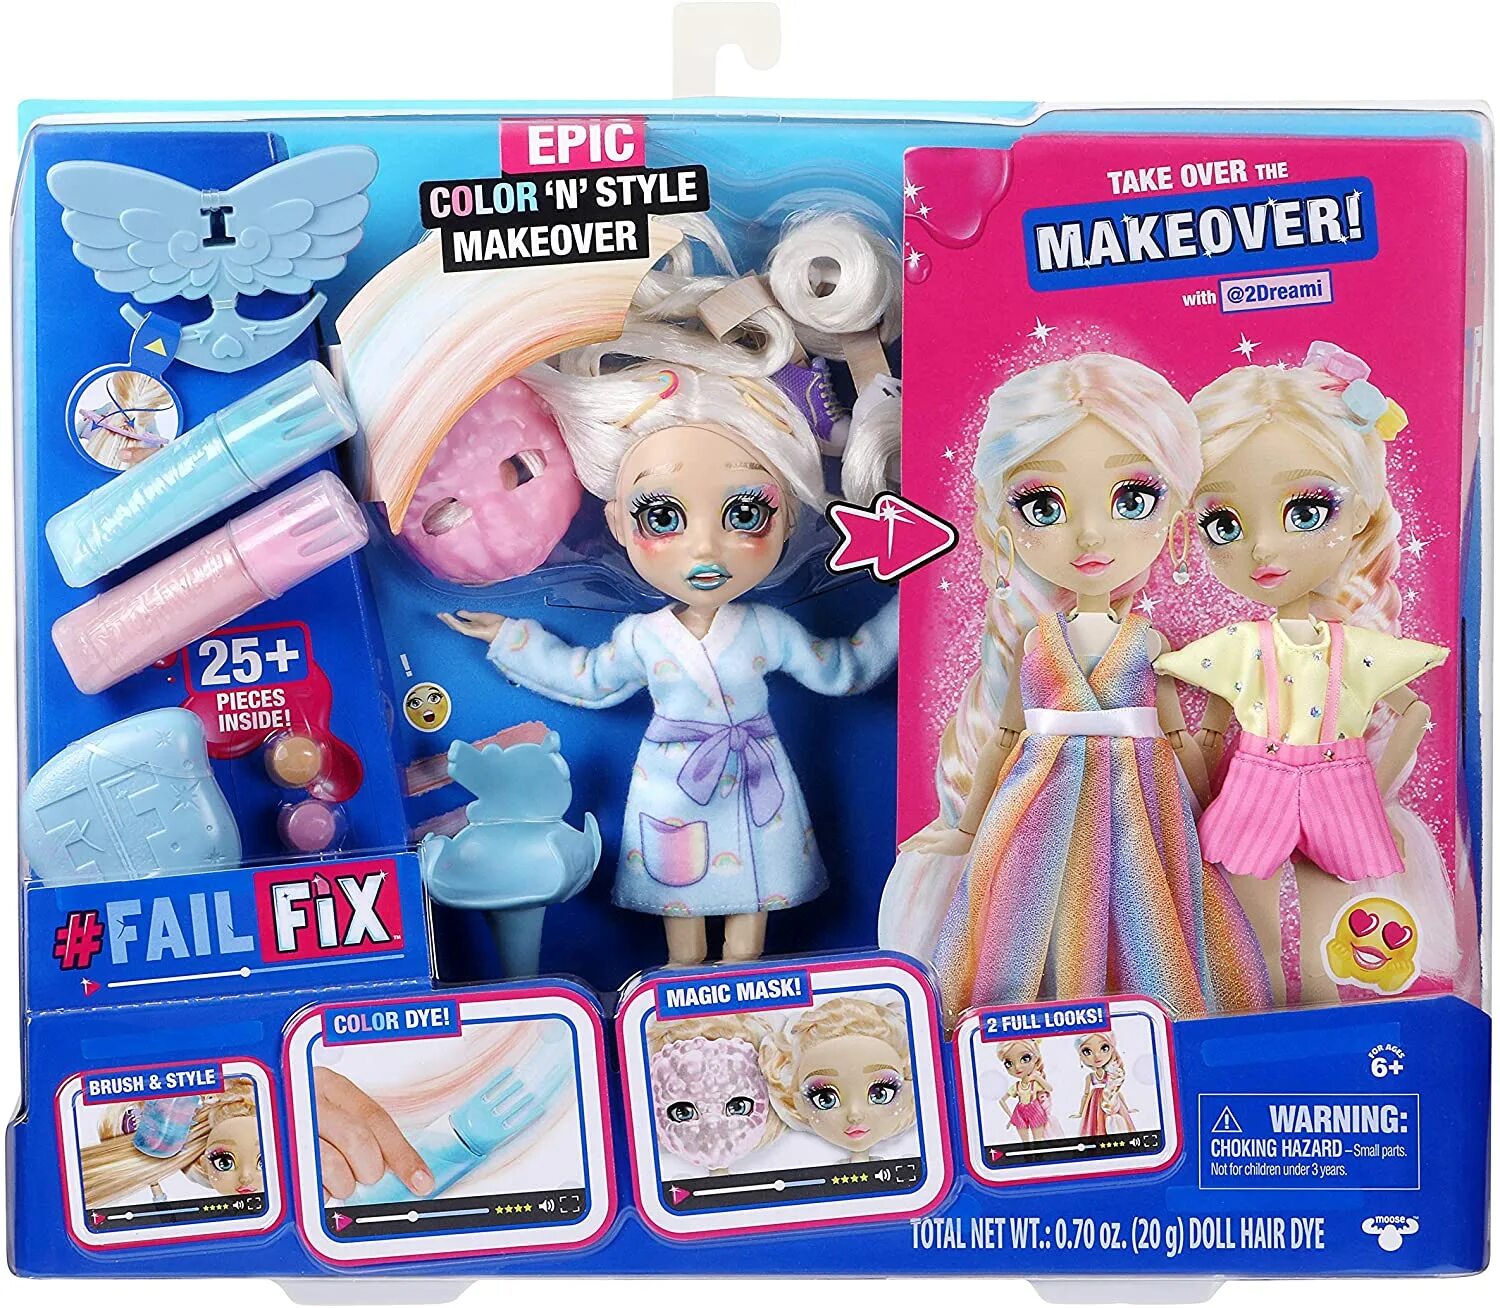 Куклы Fix fail 2020 Moose Toys. Куклы Makeover fail Fix. Куклы фейл фикс. Куклы файл фикс все образы. Epic fix